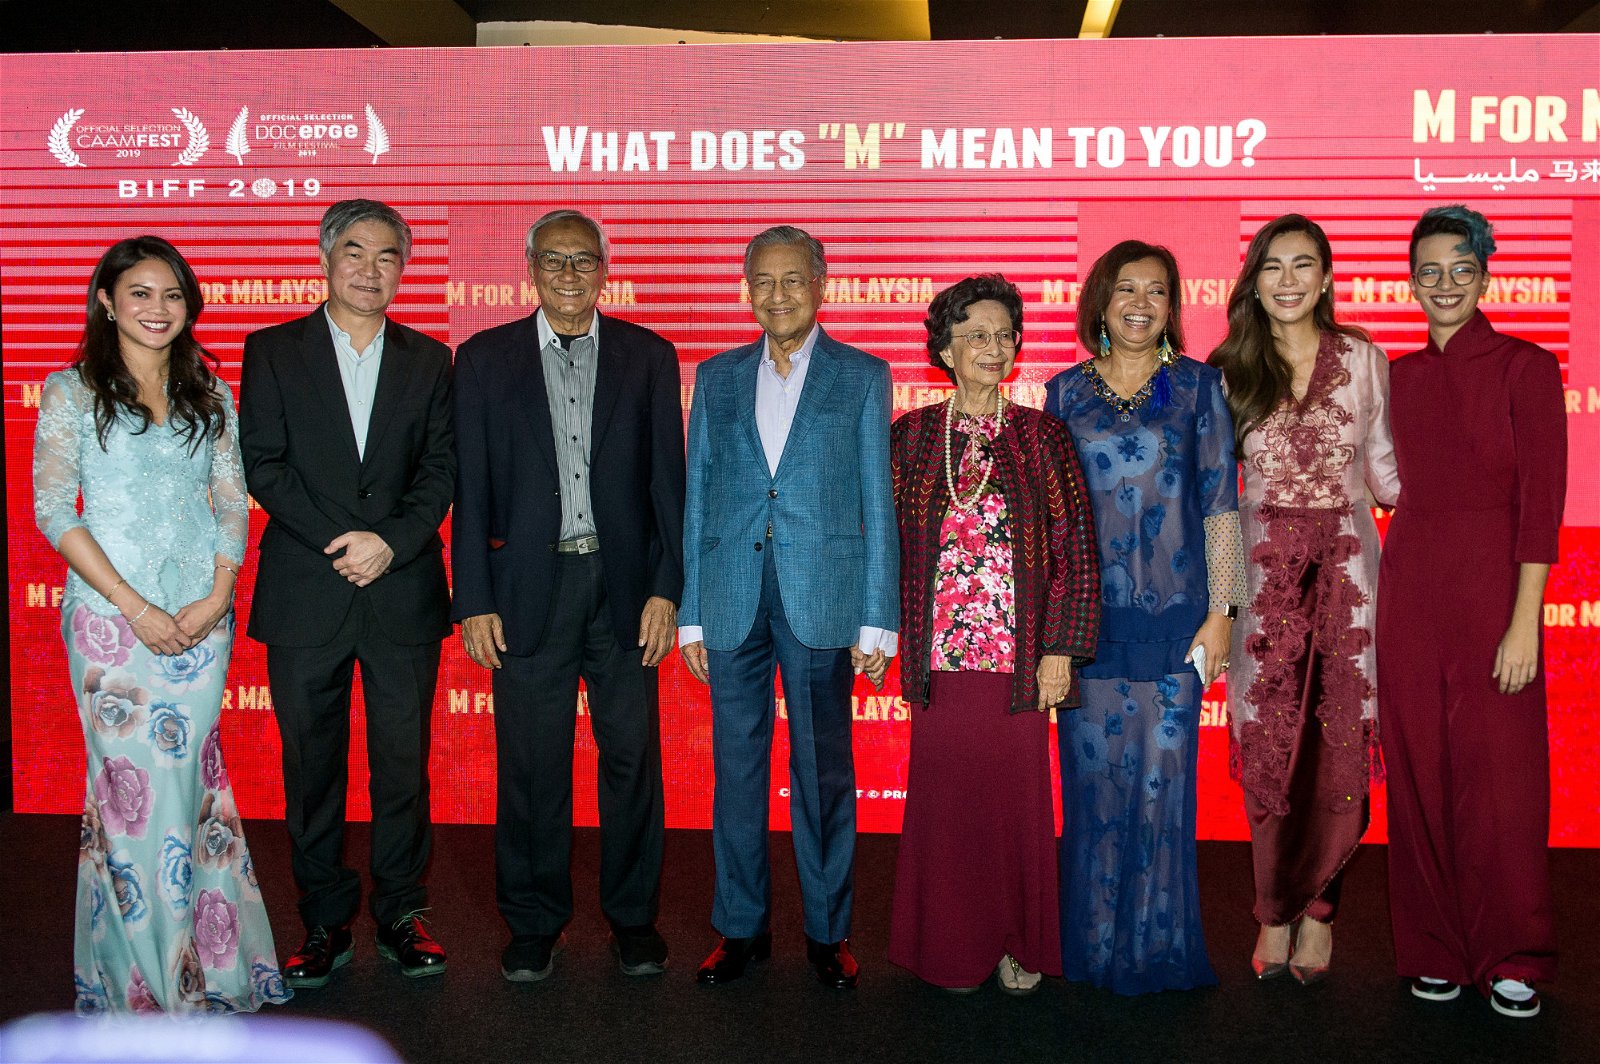 马哈迪（左4起）与西蒂哈斯玛出席外孙女依妮扎（右起）与拿汀李静霖联合执导“M for Malaysia” 纪录片首映礼。右3为拿汀巴杜卡玛丽娜。